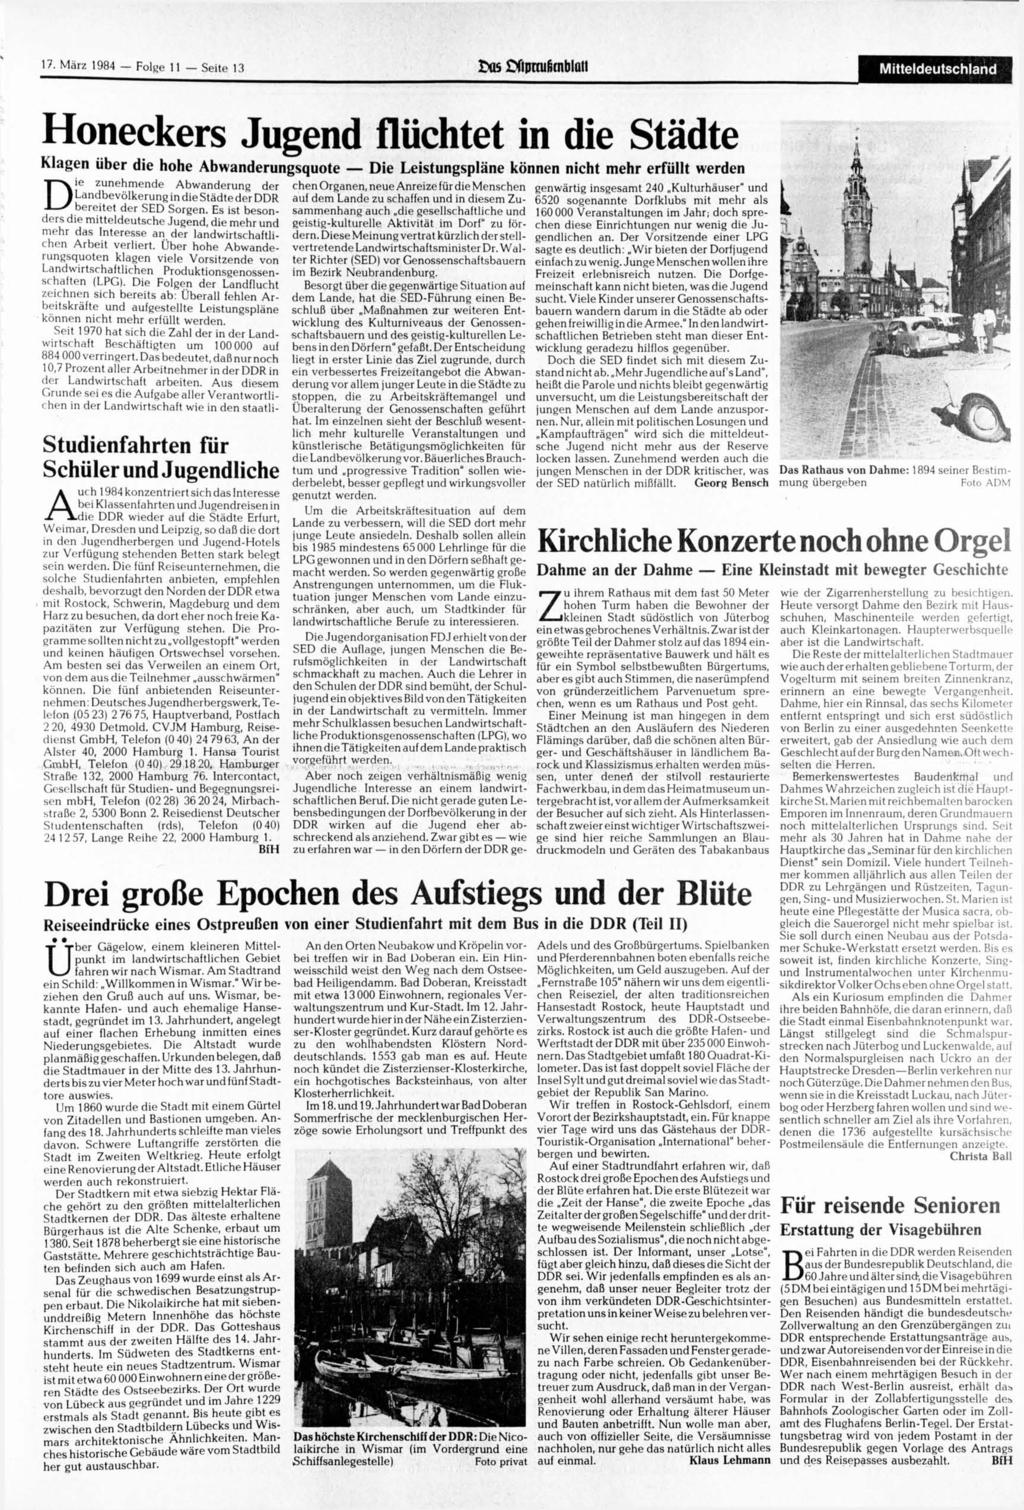 17. 1984 Folge 11 Seite 13 us Sfipnufitnblüti Mitteldeutschland Honeckers Jugend flüchtet in die Städte Klagen über die hohe Abwanderungsquote Die Leistungspläne können nicht mehr erfüllt werden Die